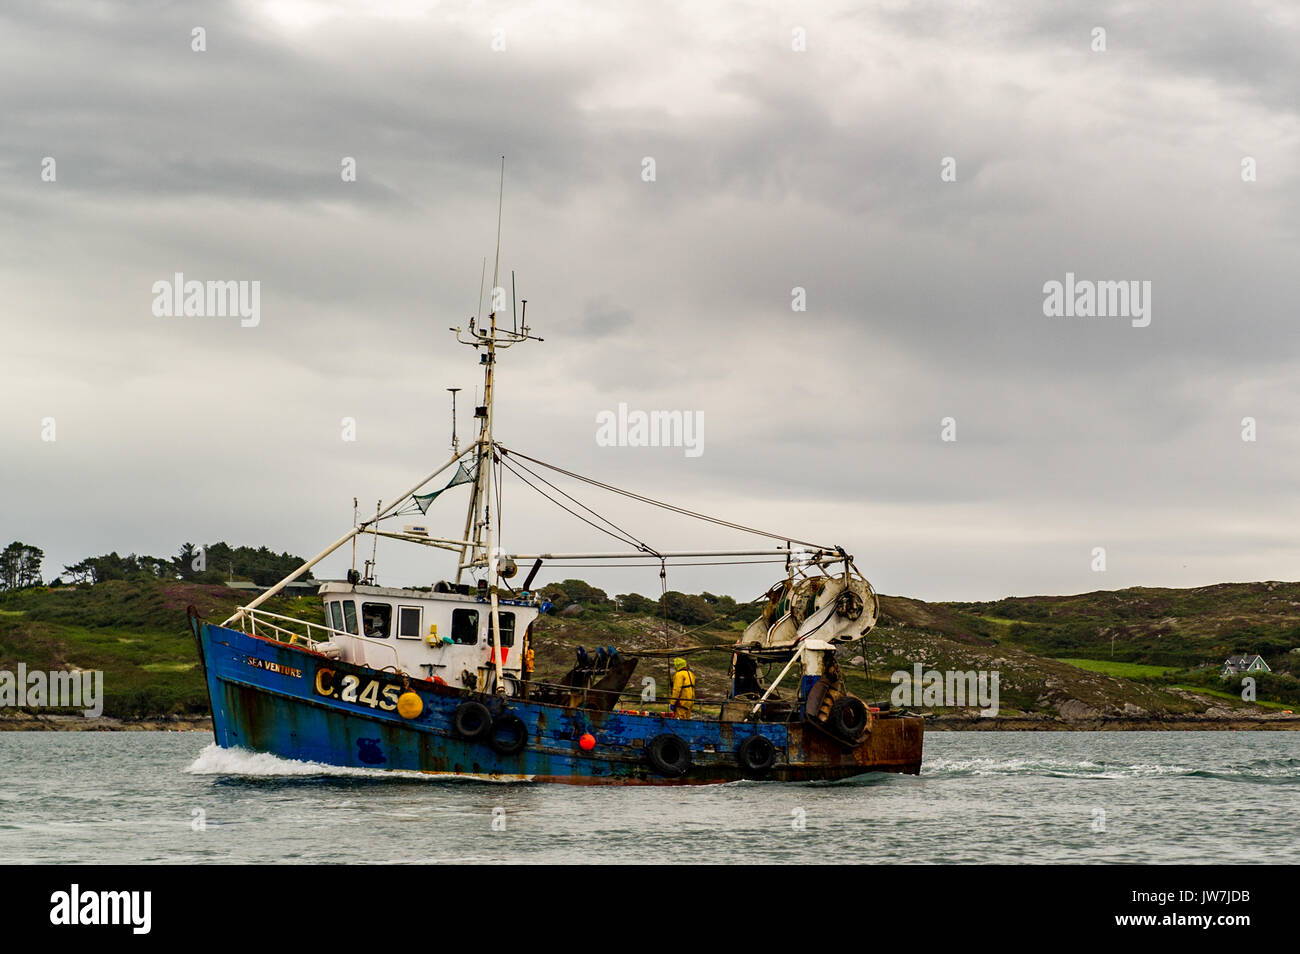 La pesca de arrastre de Aparejo Gemelo irlandés C.245 Mar Empresa velas en Schull Harbour, West Cork, Irlanda, con una carga de peces para ser descargado. Foto de stock